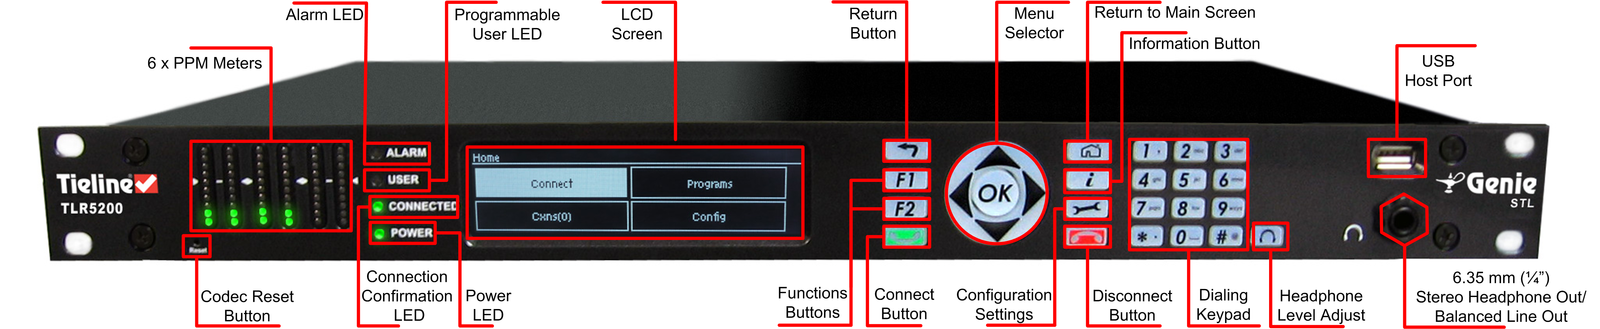 599_G5_rack_unit_front_panel_description_v.4.01